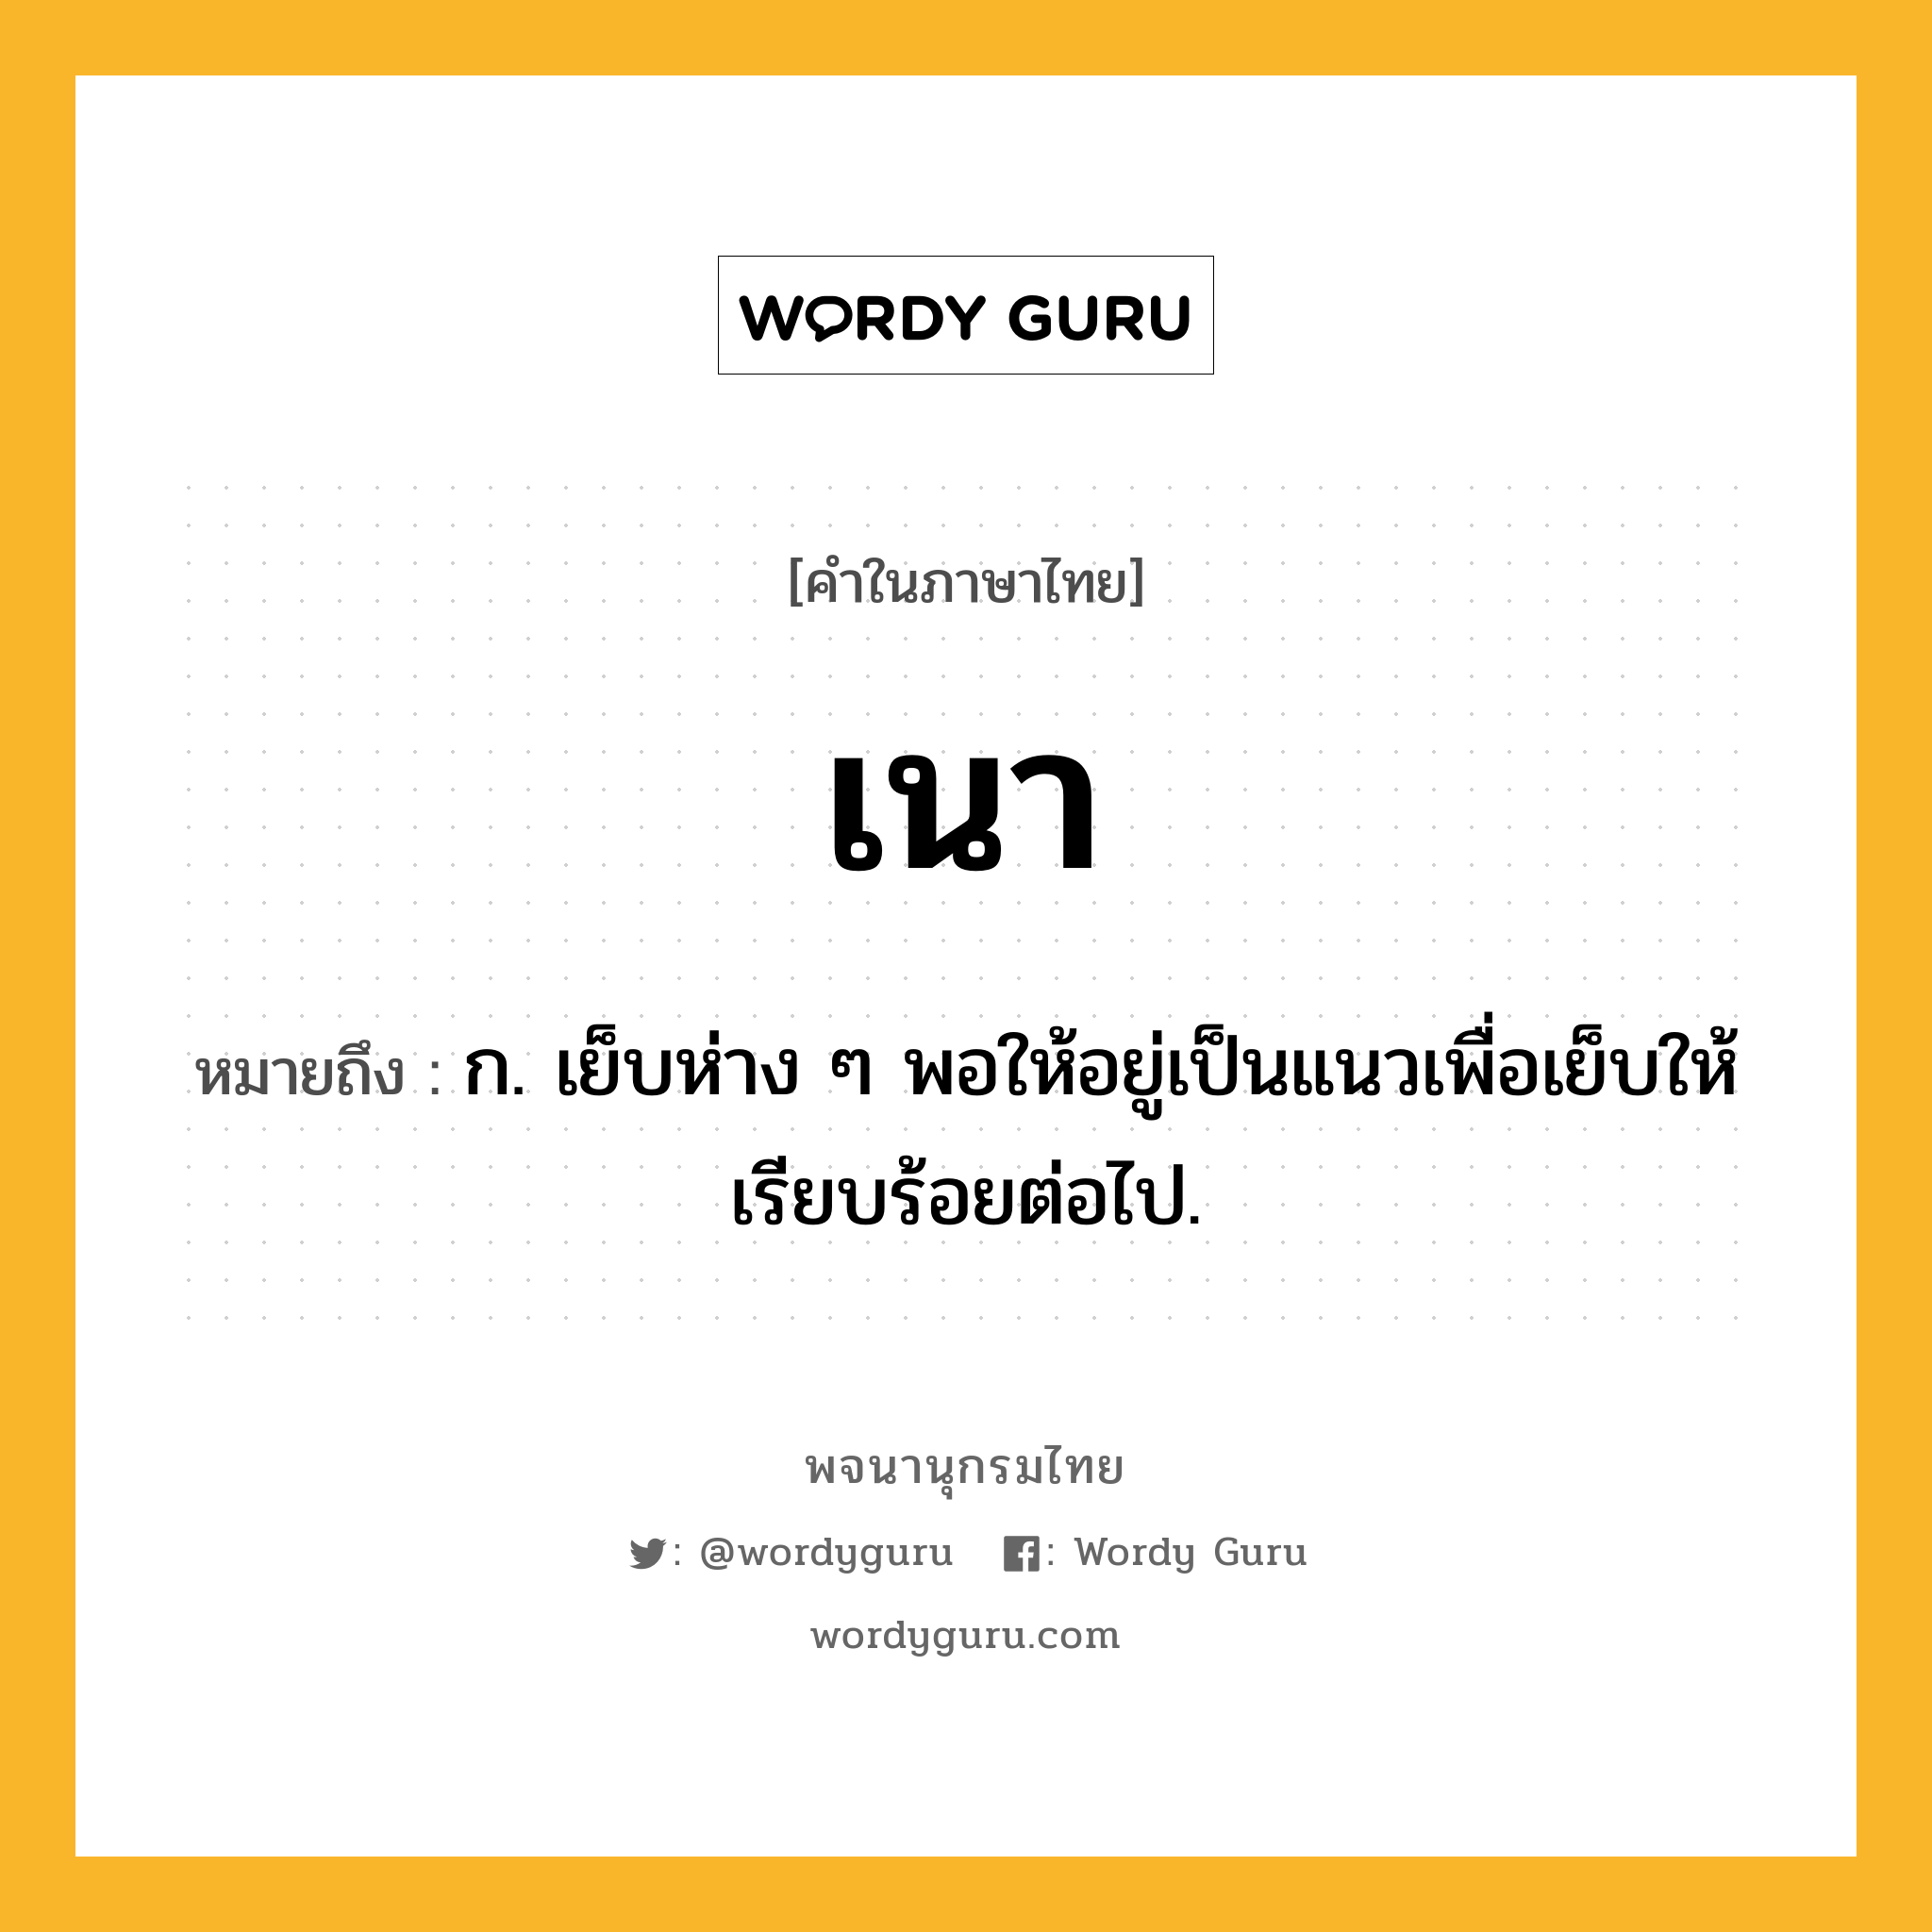 เนา หมายถึงอะไร?, คำในภาษาไทย เนา หมายถึง ก. เย็บห่าง ๆ พอให้อยู่เป็นแนวเพื่อเย็บให้เรียบร้อยต่อไป.